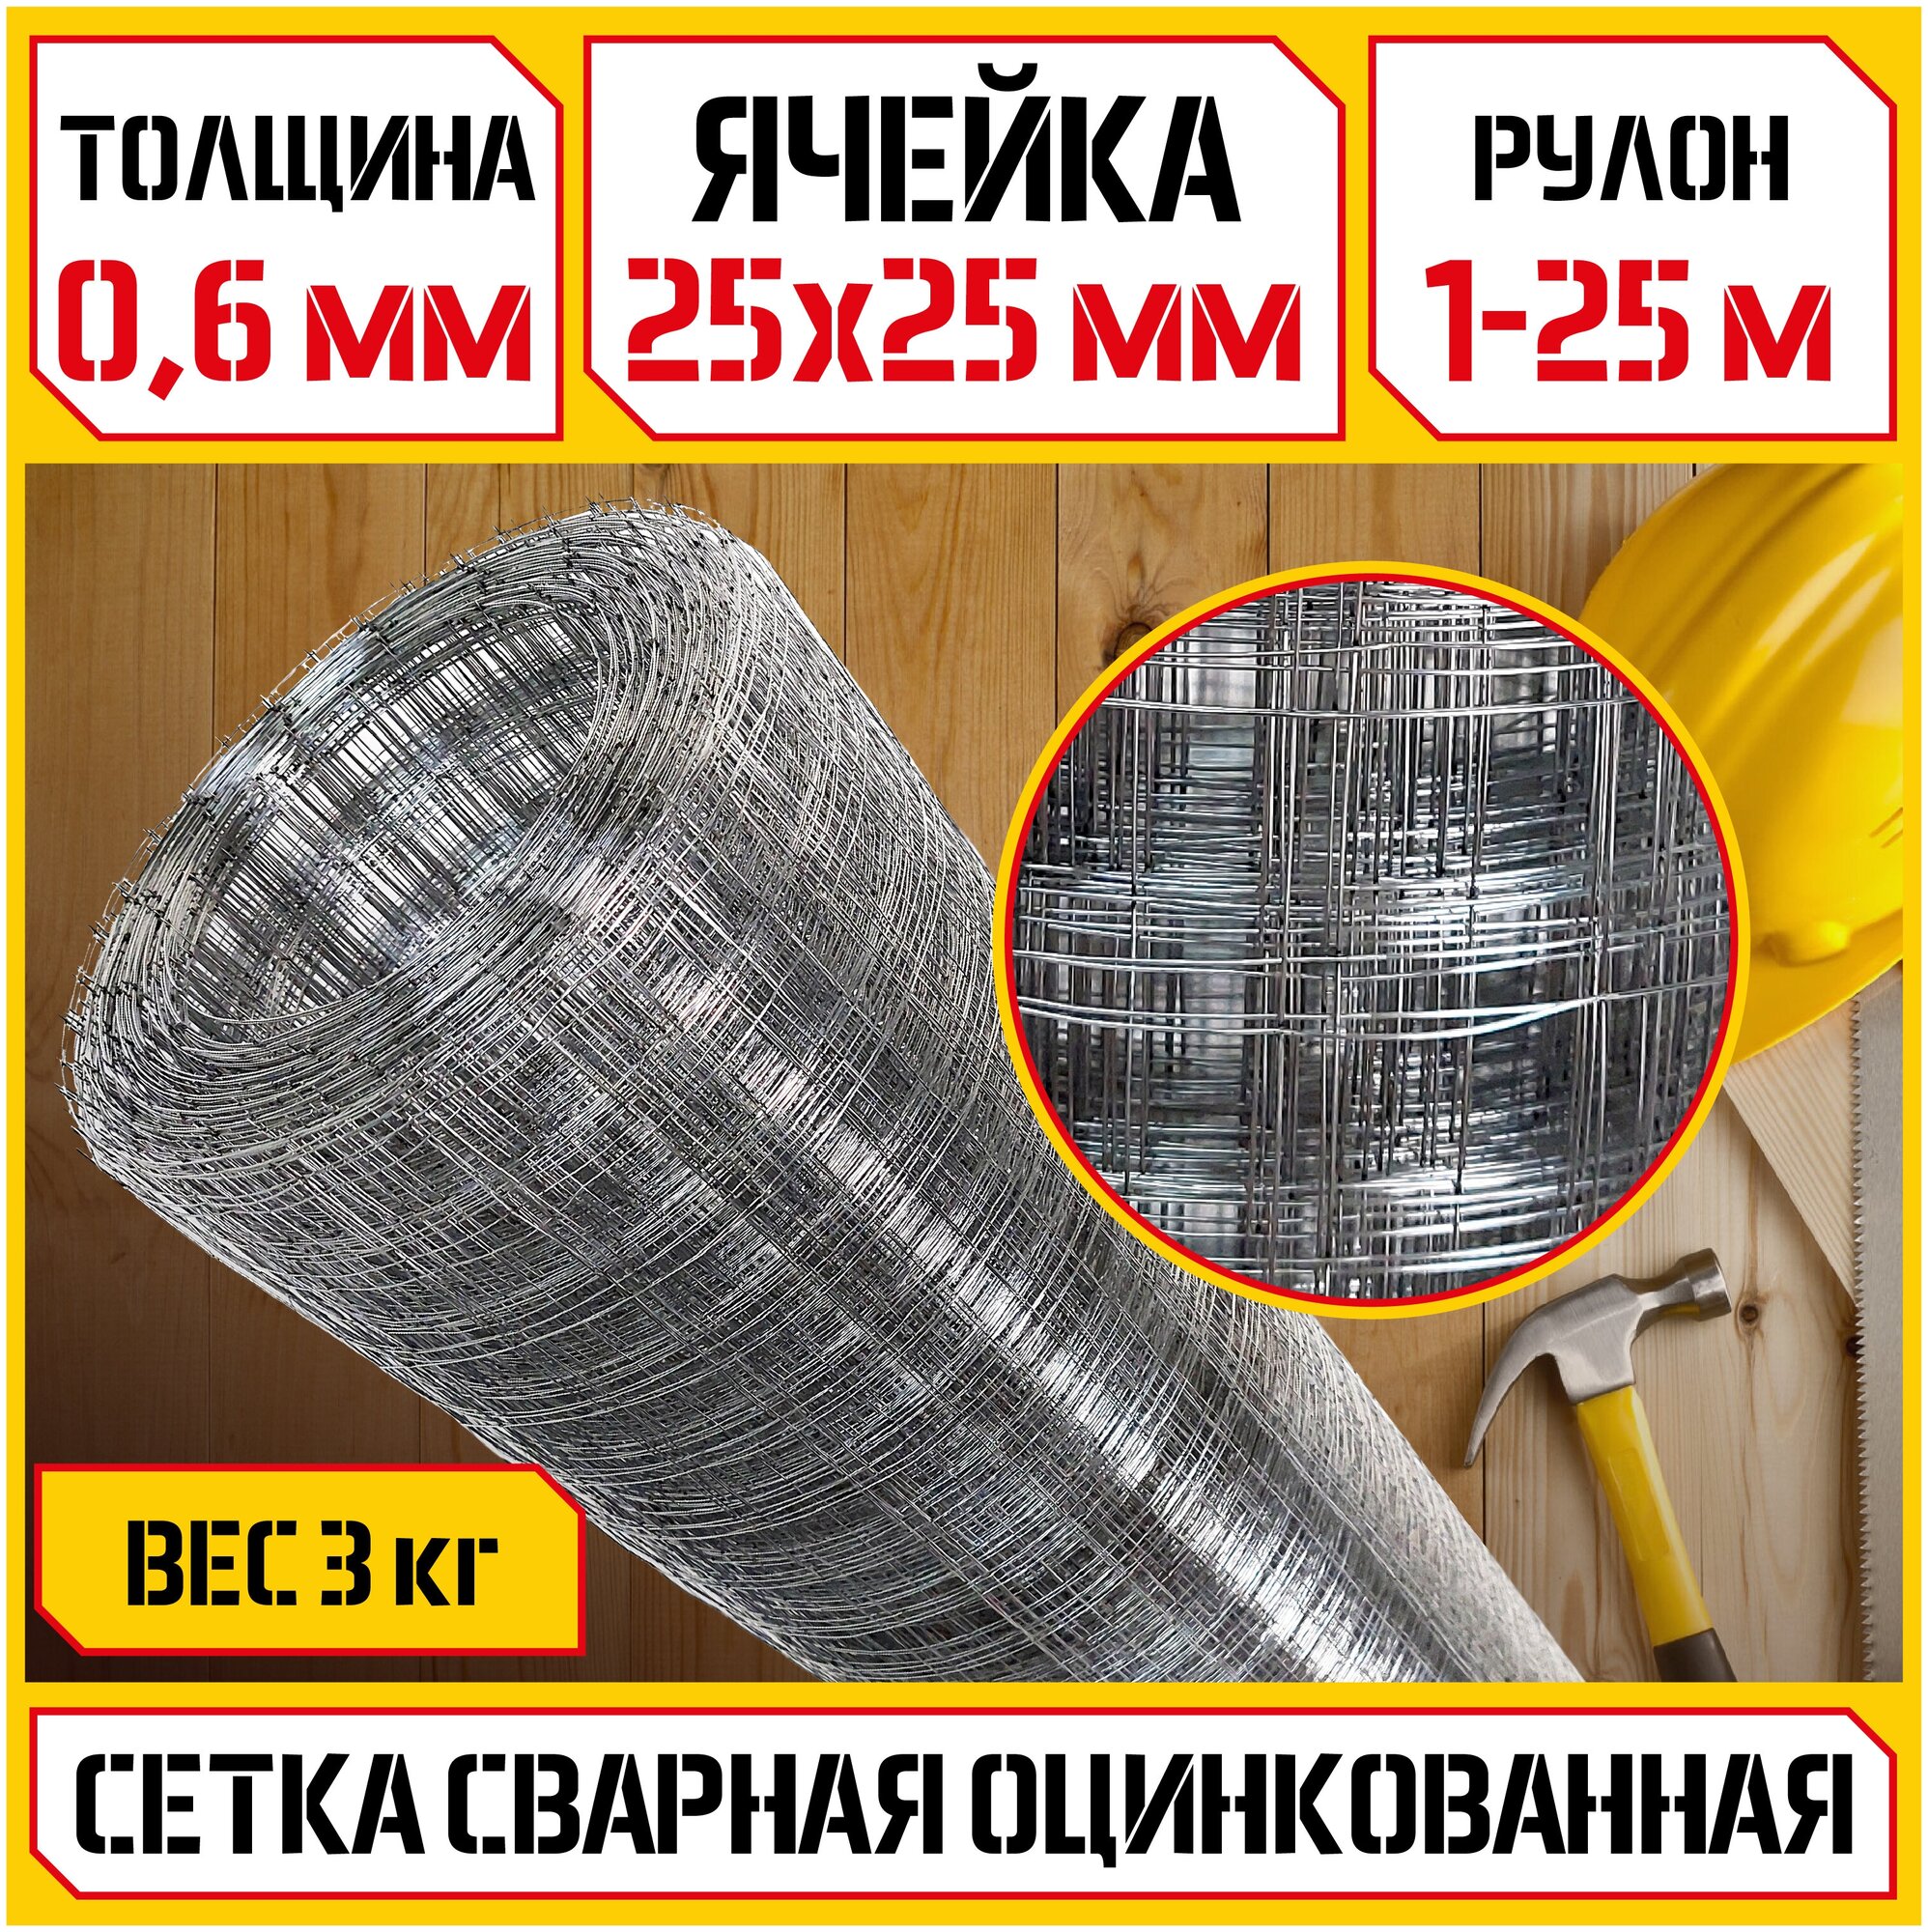 Сетка сварная оцинкованная КБР (Ø 06 мм ячейка 25х25мм 1-25м) стальная сетка для кладки/армирующая/строительная/кладочная